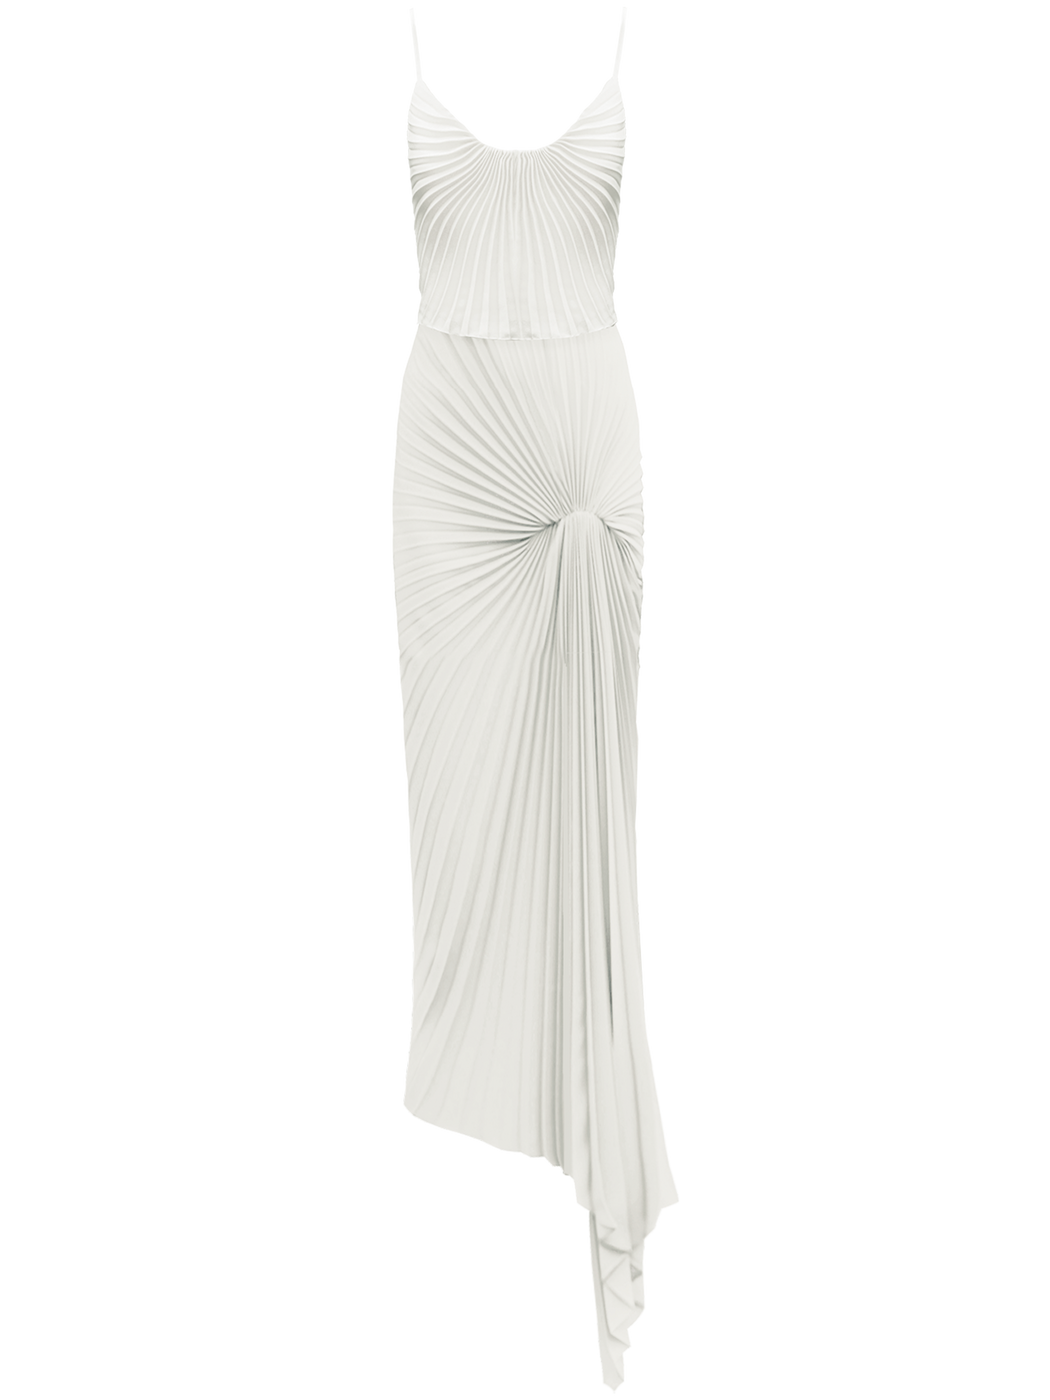 Georgia Hardinge Dazed Dress maxi floor length ivory strappy gown wedding white pleated sustainable bridal